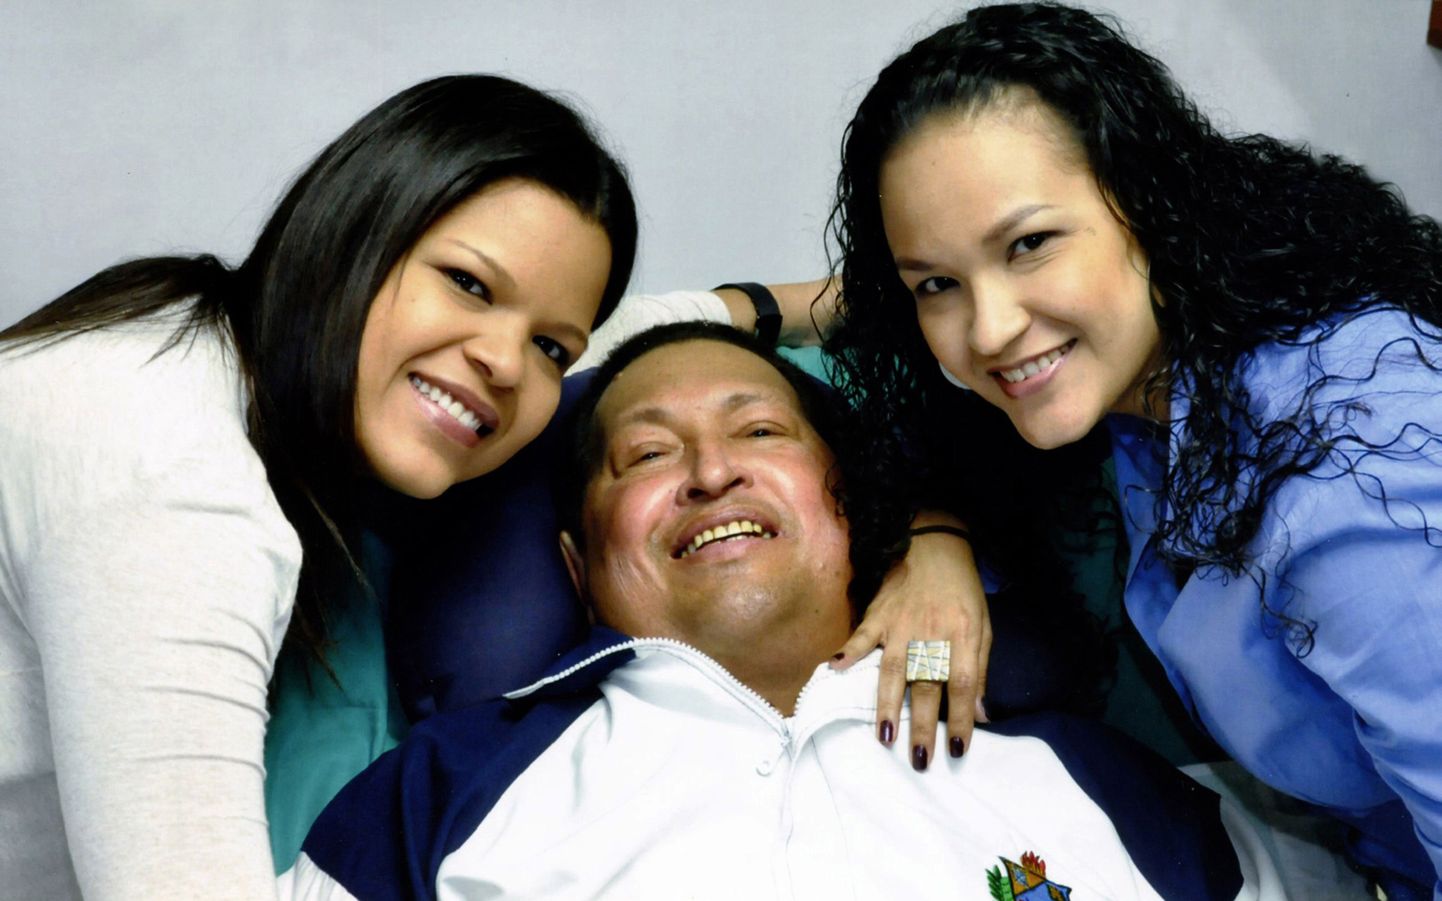 Правительство Венесуэлы опубликовало первые за два месяца фотоснимки президента Уго Чавеса после его последней операции на Кубе, где он проходит курс лечения от рака.